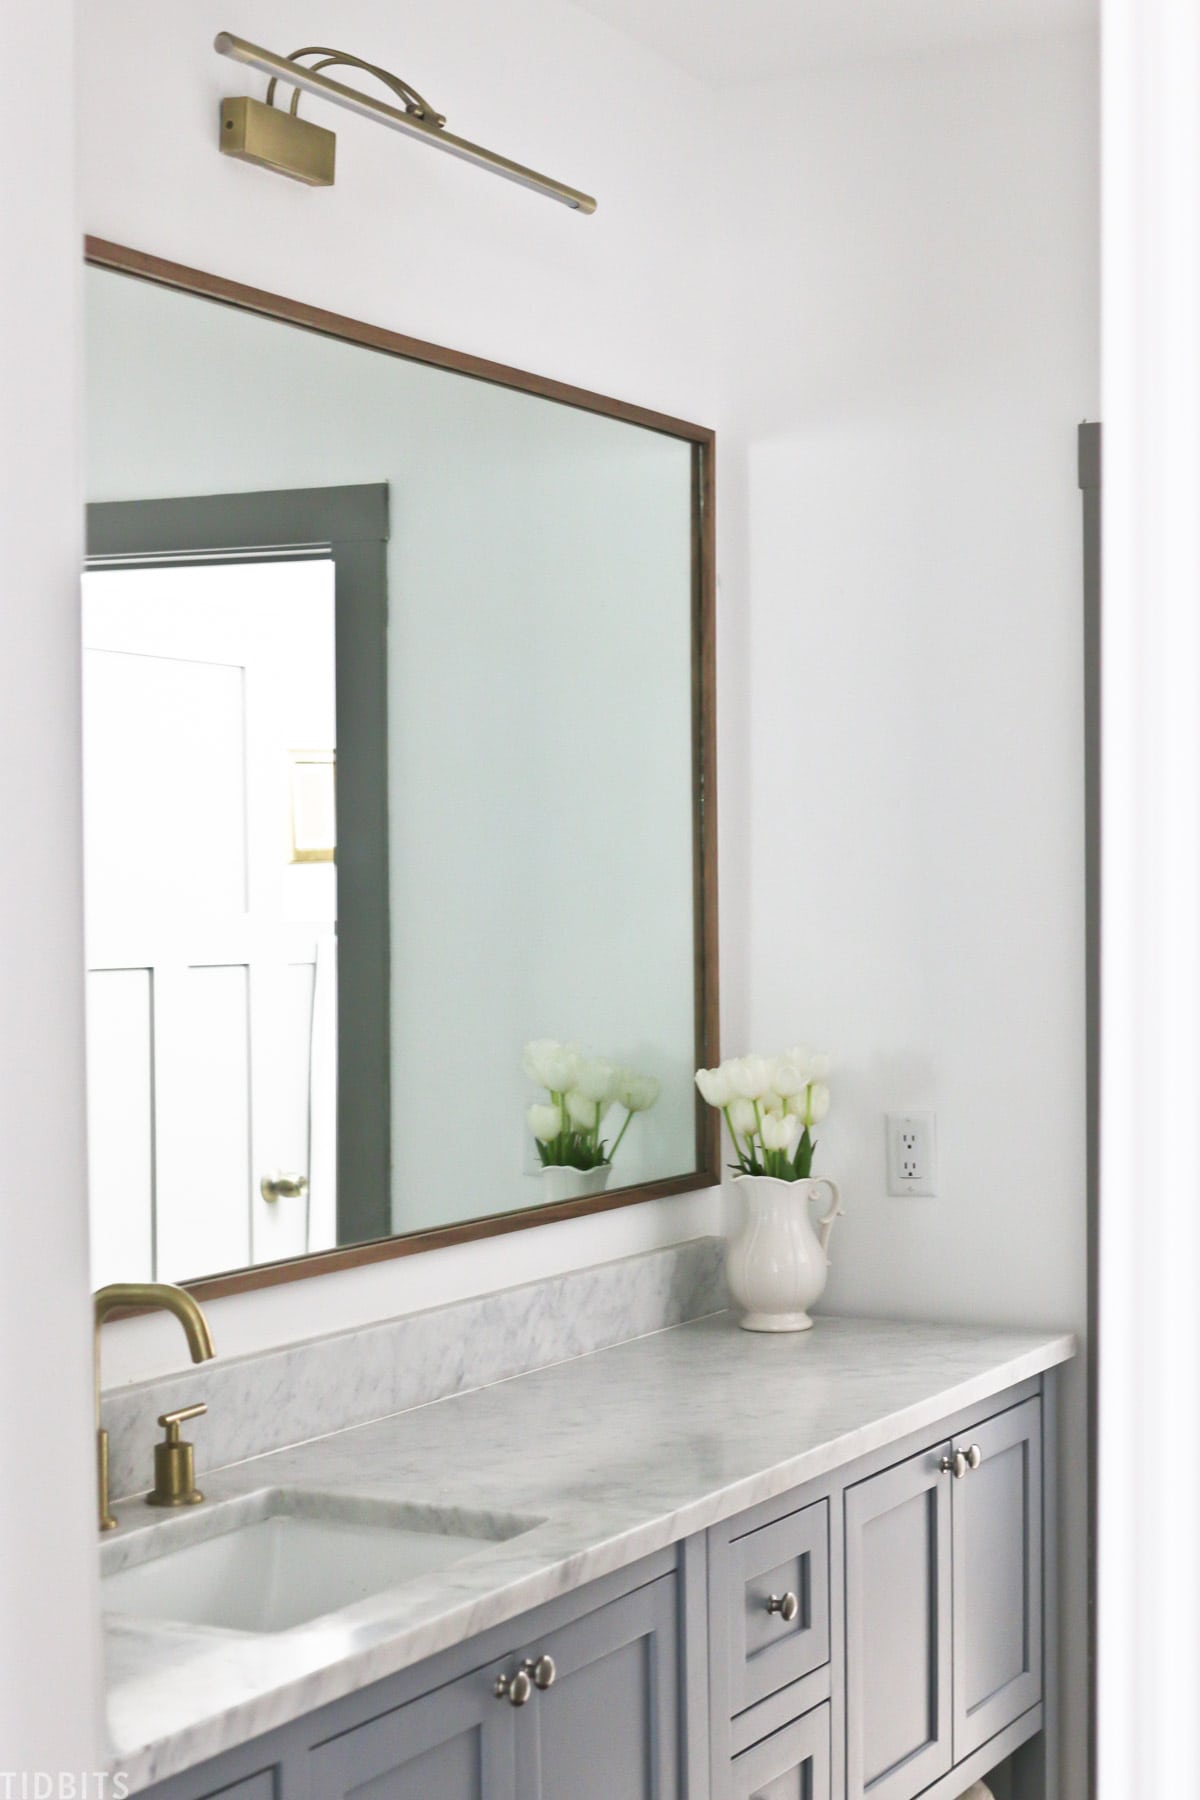 Diy Wood Mirror Frame For Bathroom, How To Add A Frame Around Bathroom Mirror